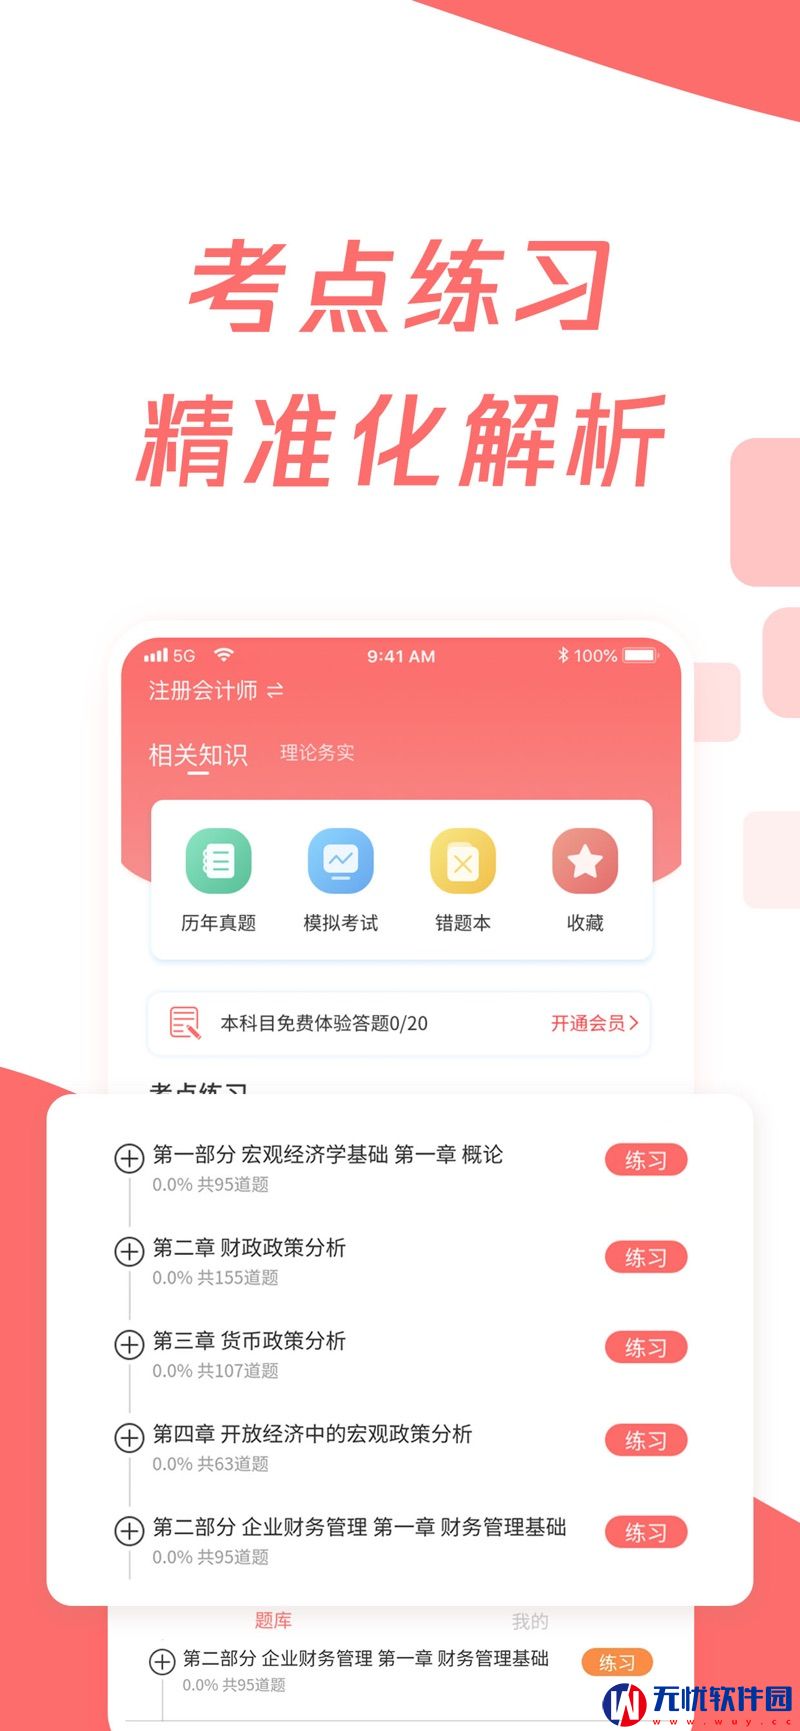 cpa注册会计题库苹果版app 